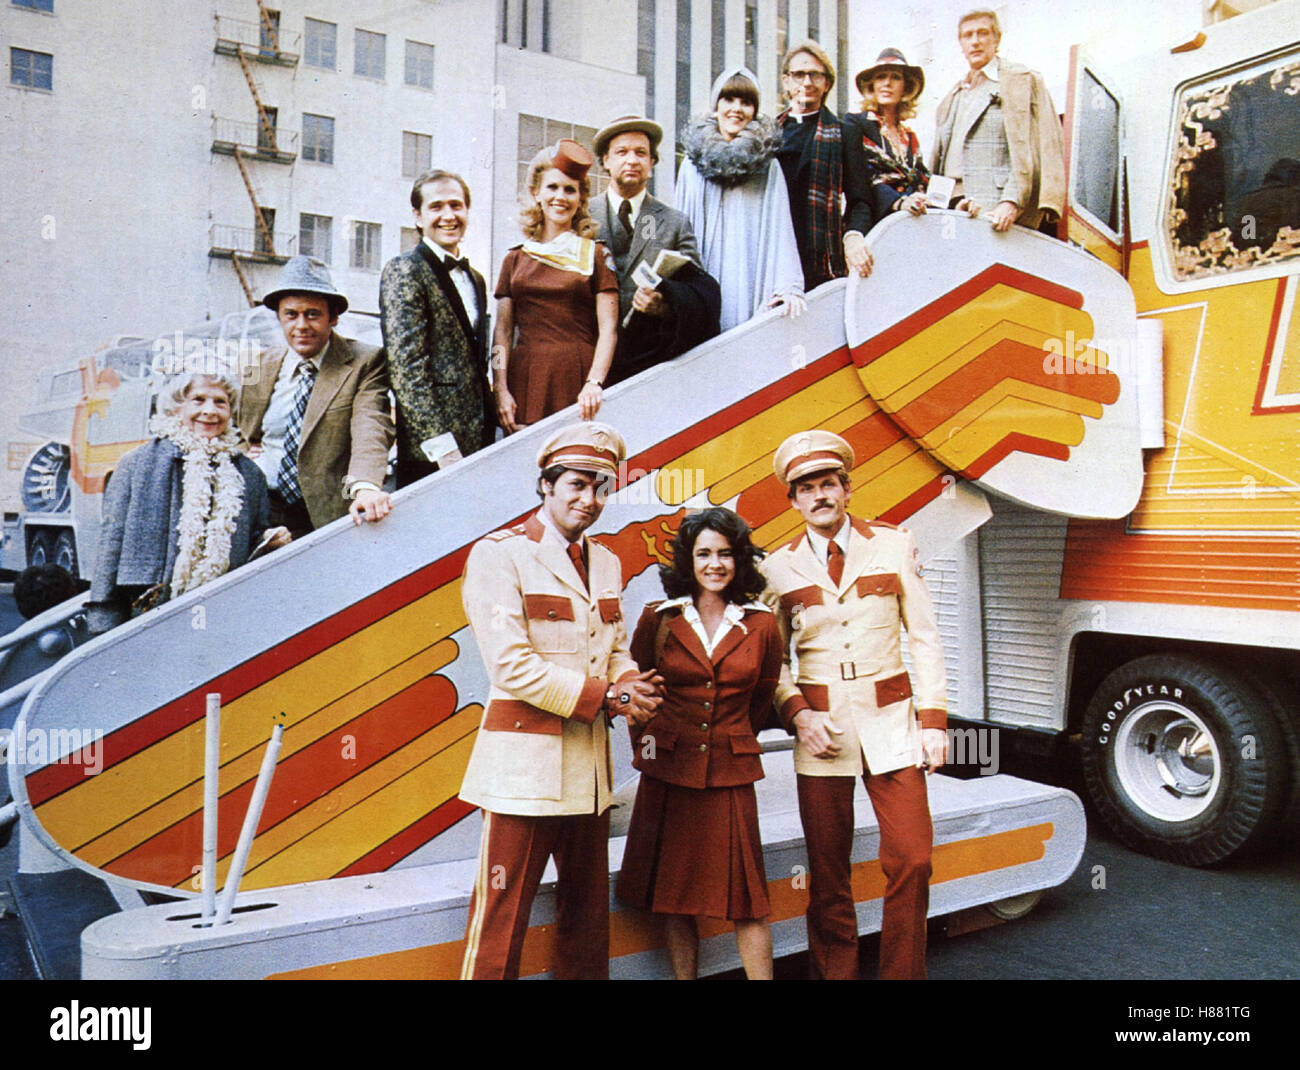 Die haarsträubende Reise in einem verrückten Bus, (THE BIG BUS) USA 1976, Regie: James Frawley, JOSEPH BOLOGNA, STOCKARD CHANNING, JOHN BECK, Stichwort: Gangway Stock Photo